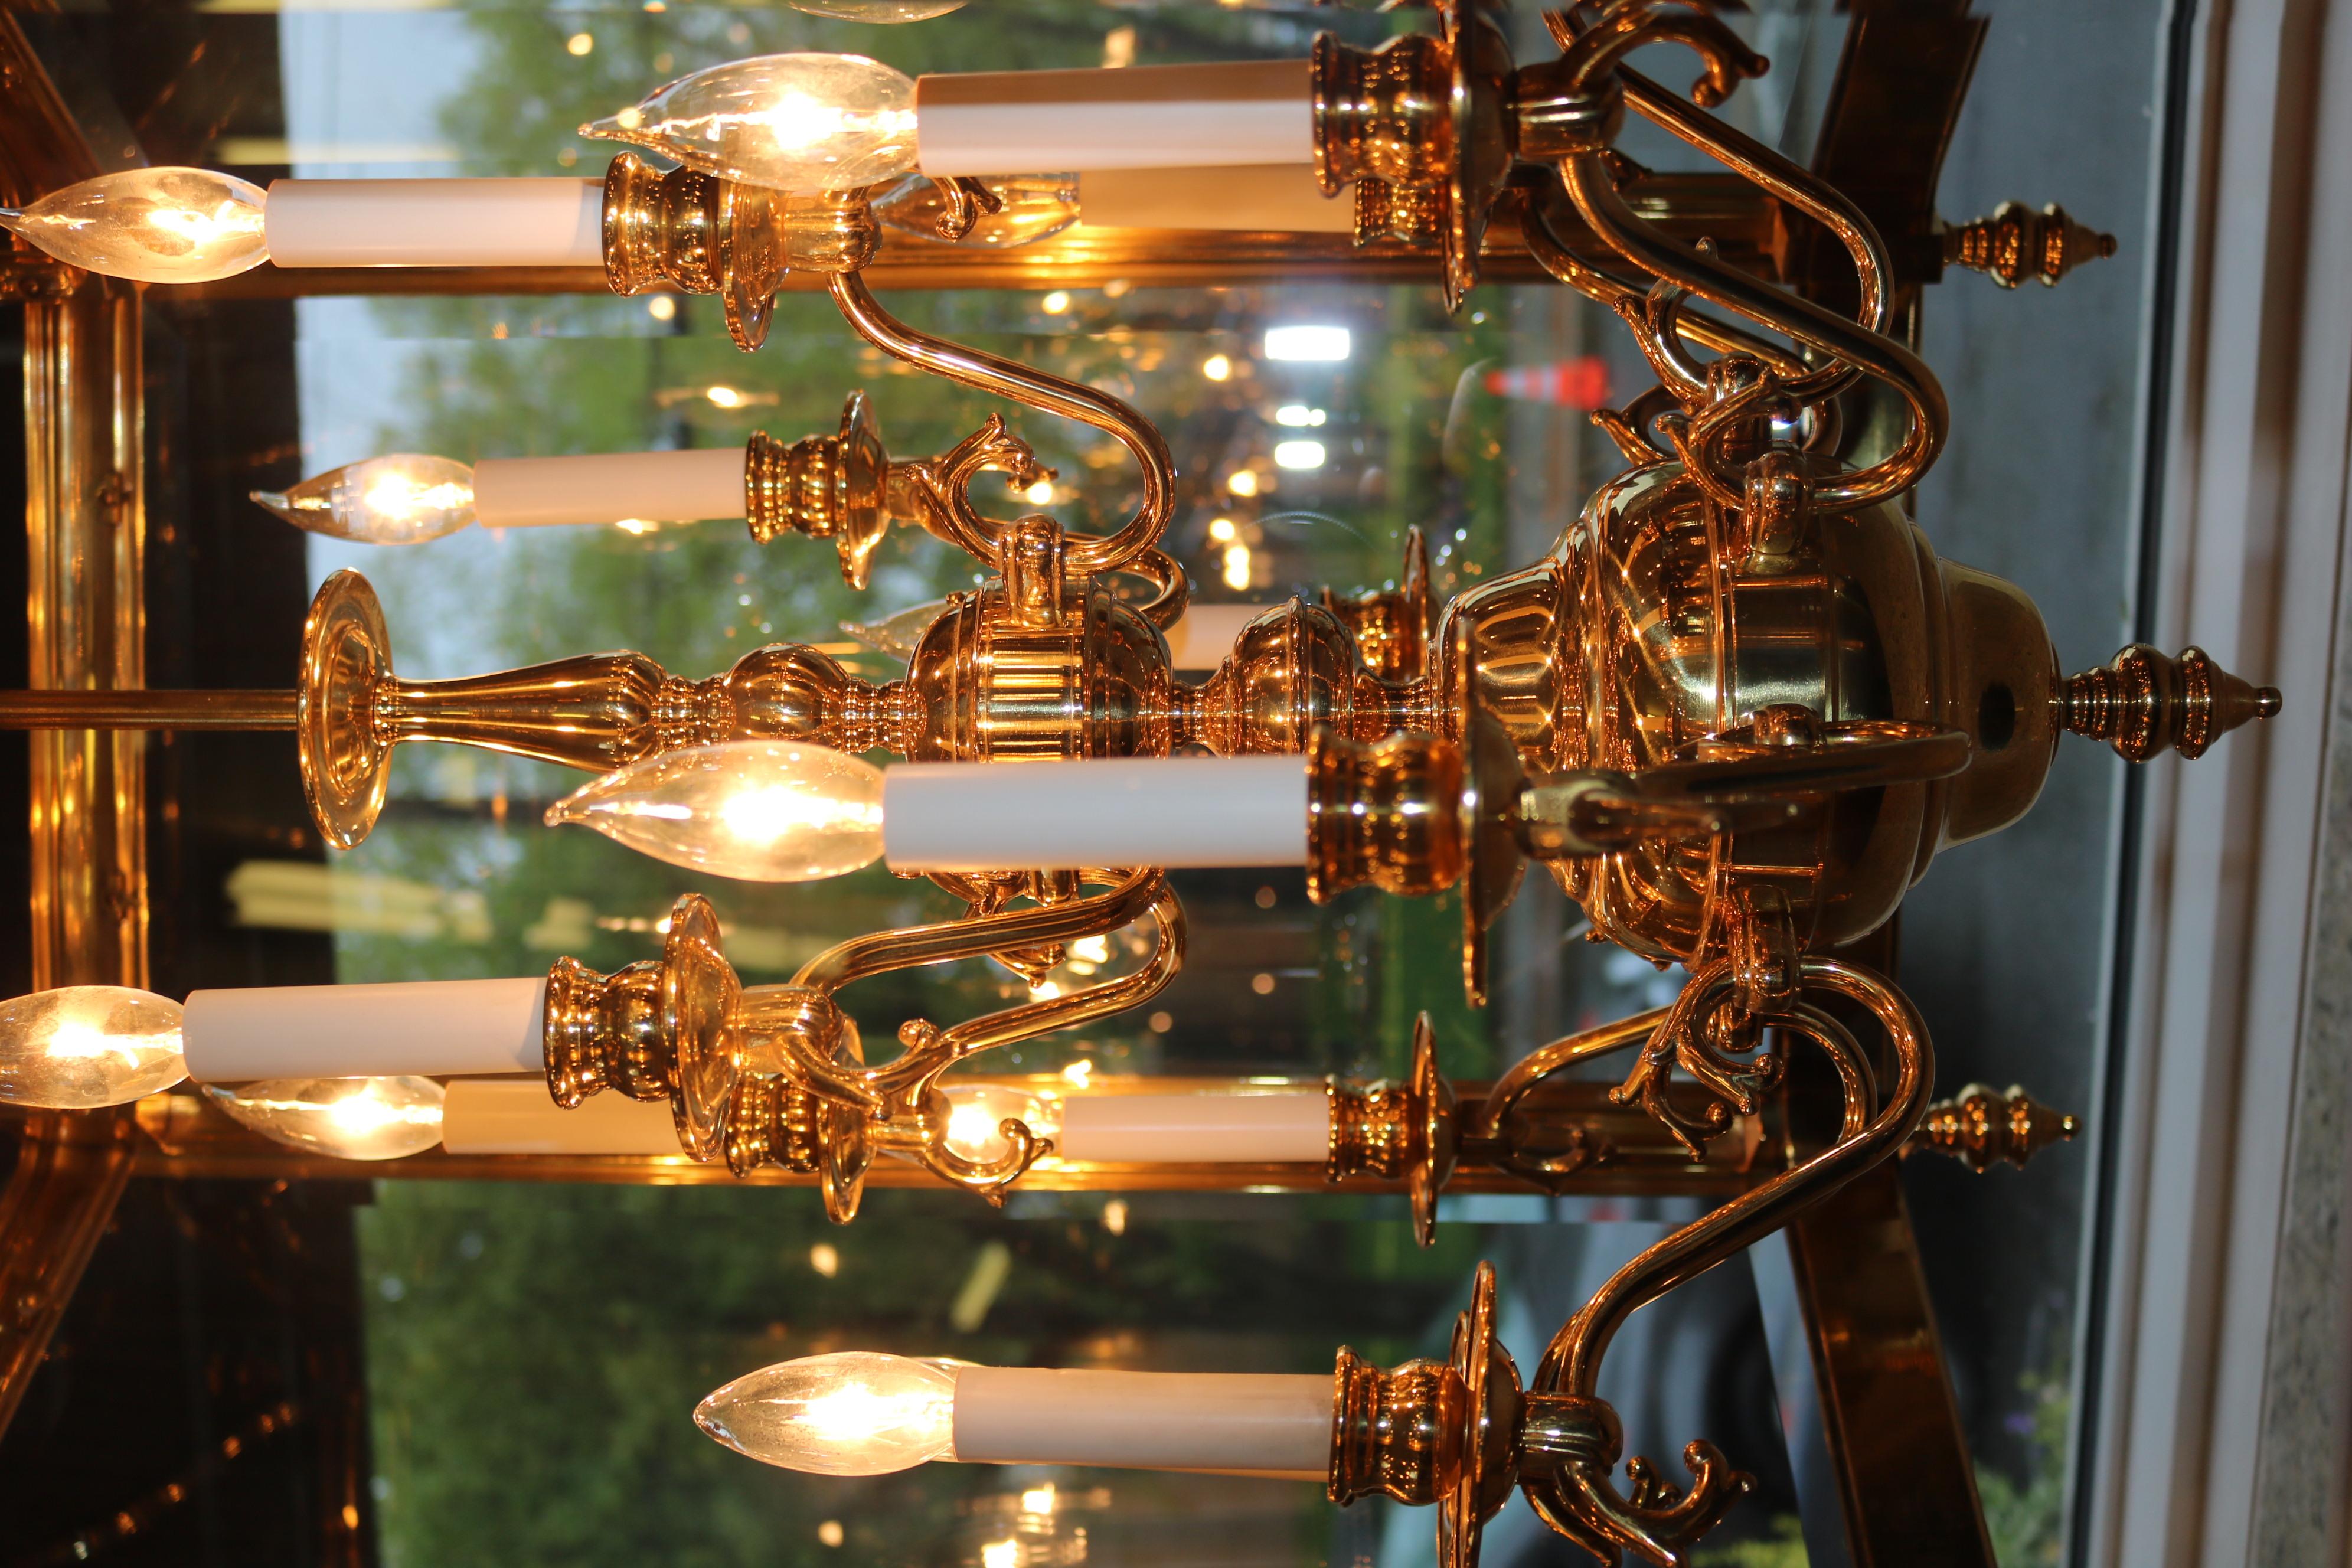 Monumental Over 4 FT Tall 12 Light Brass & Glass Chandelier Lantern For Sale 7